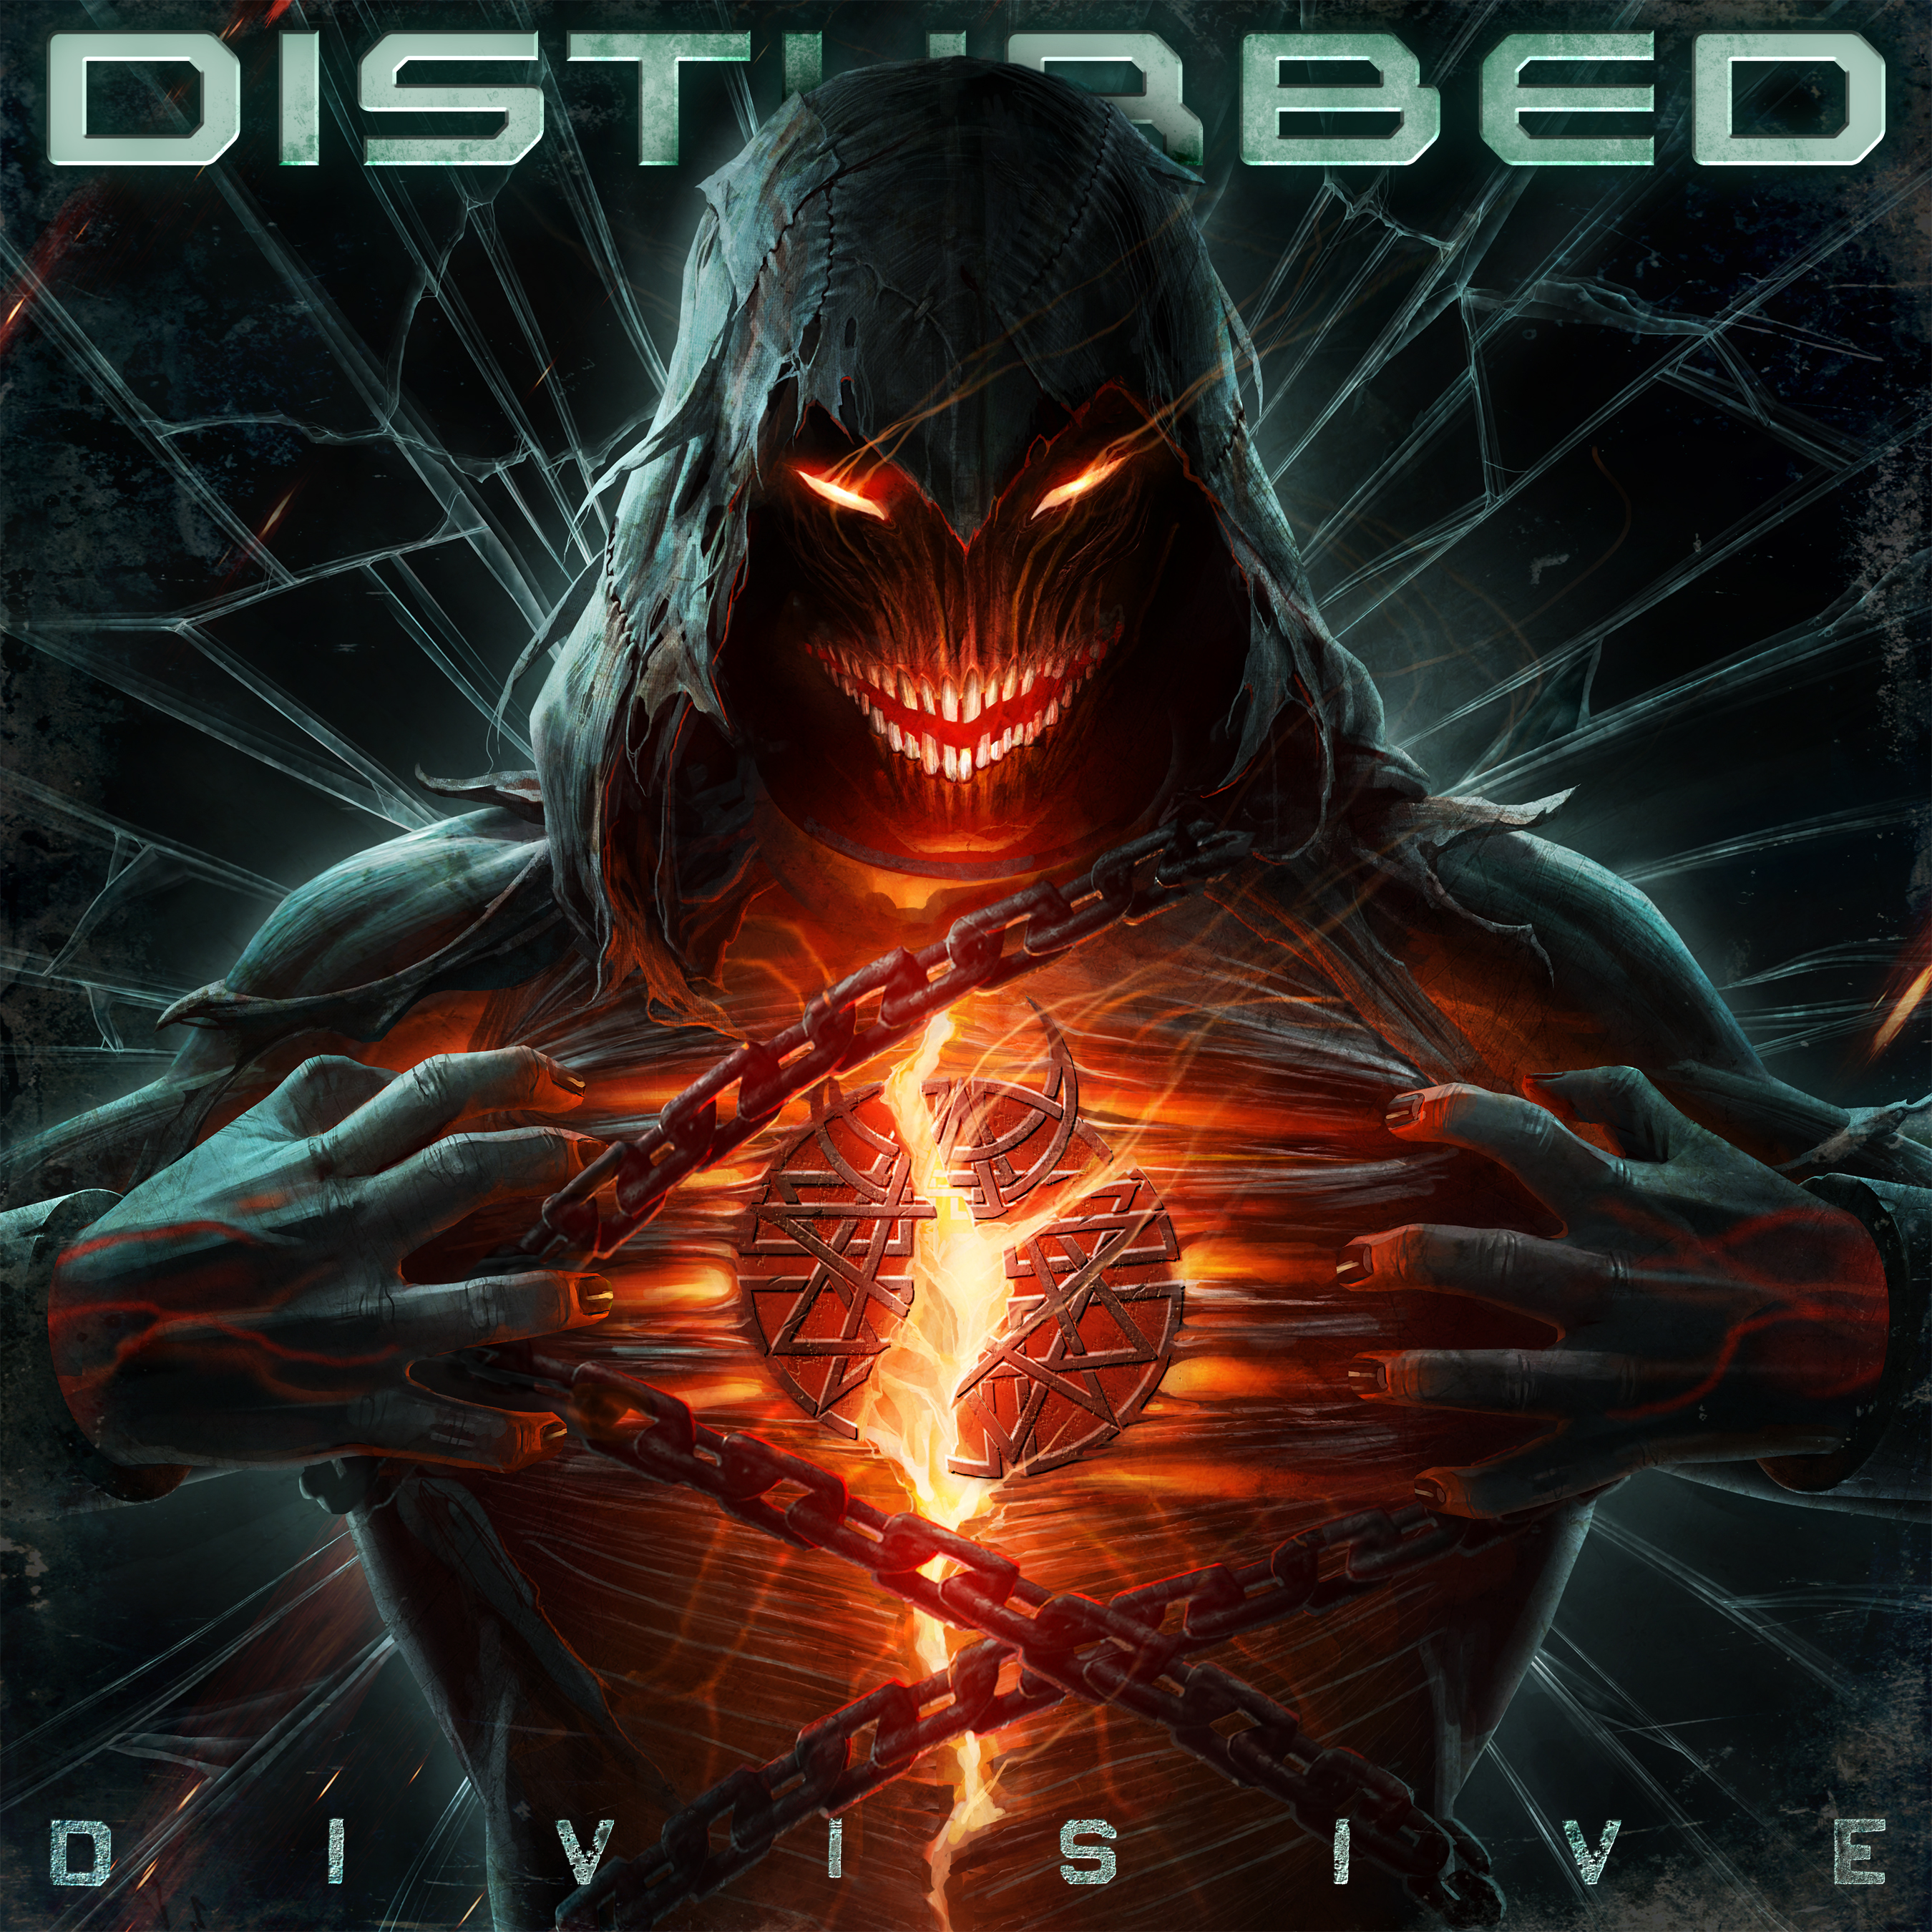 Disturbed's album artwork for their eighth studio album Divisive 